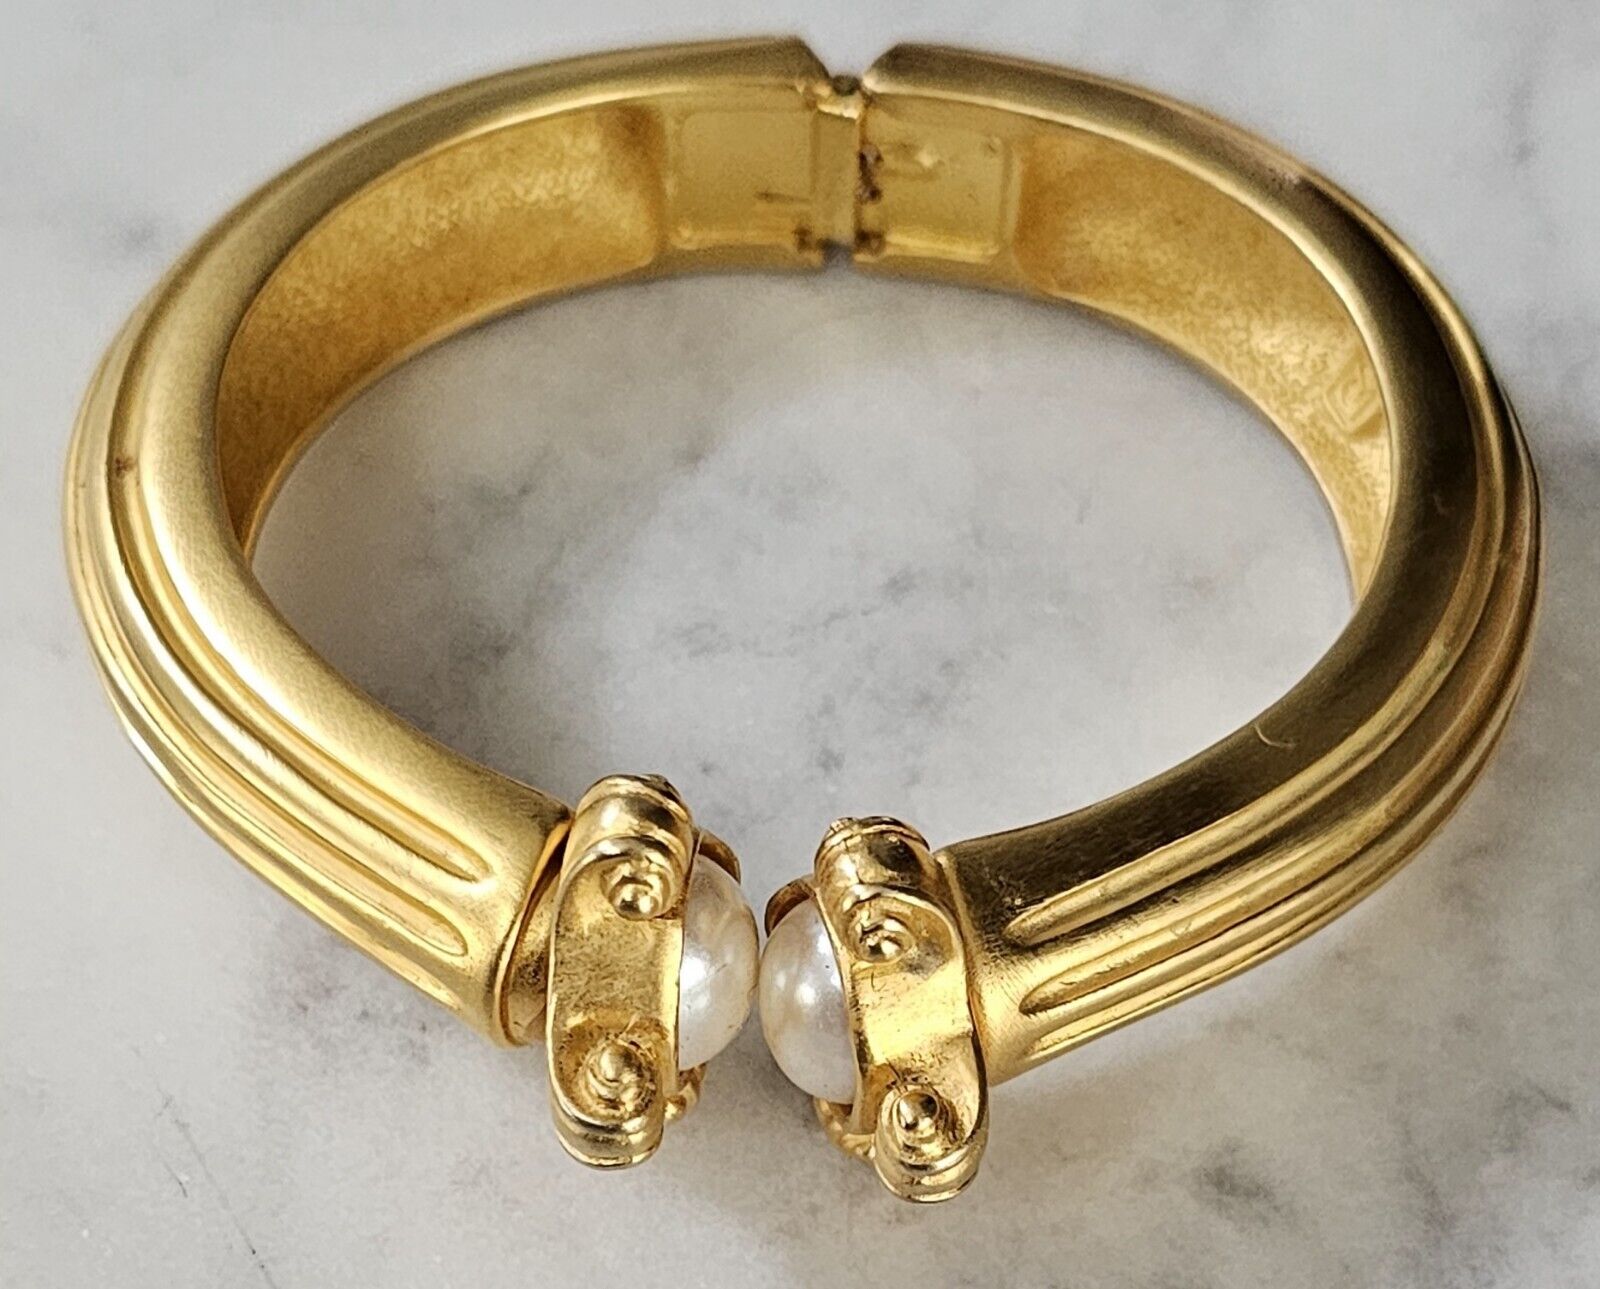 Vintage Carlisle New York Gold Tone Bracelet - Signed